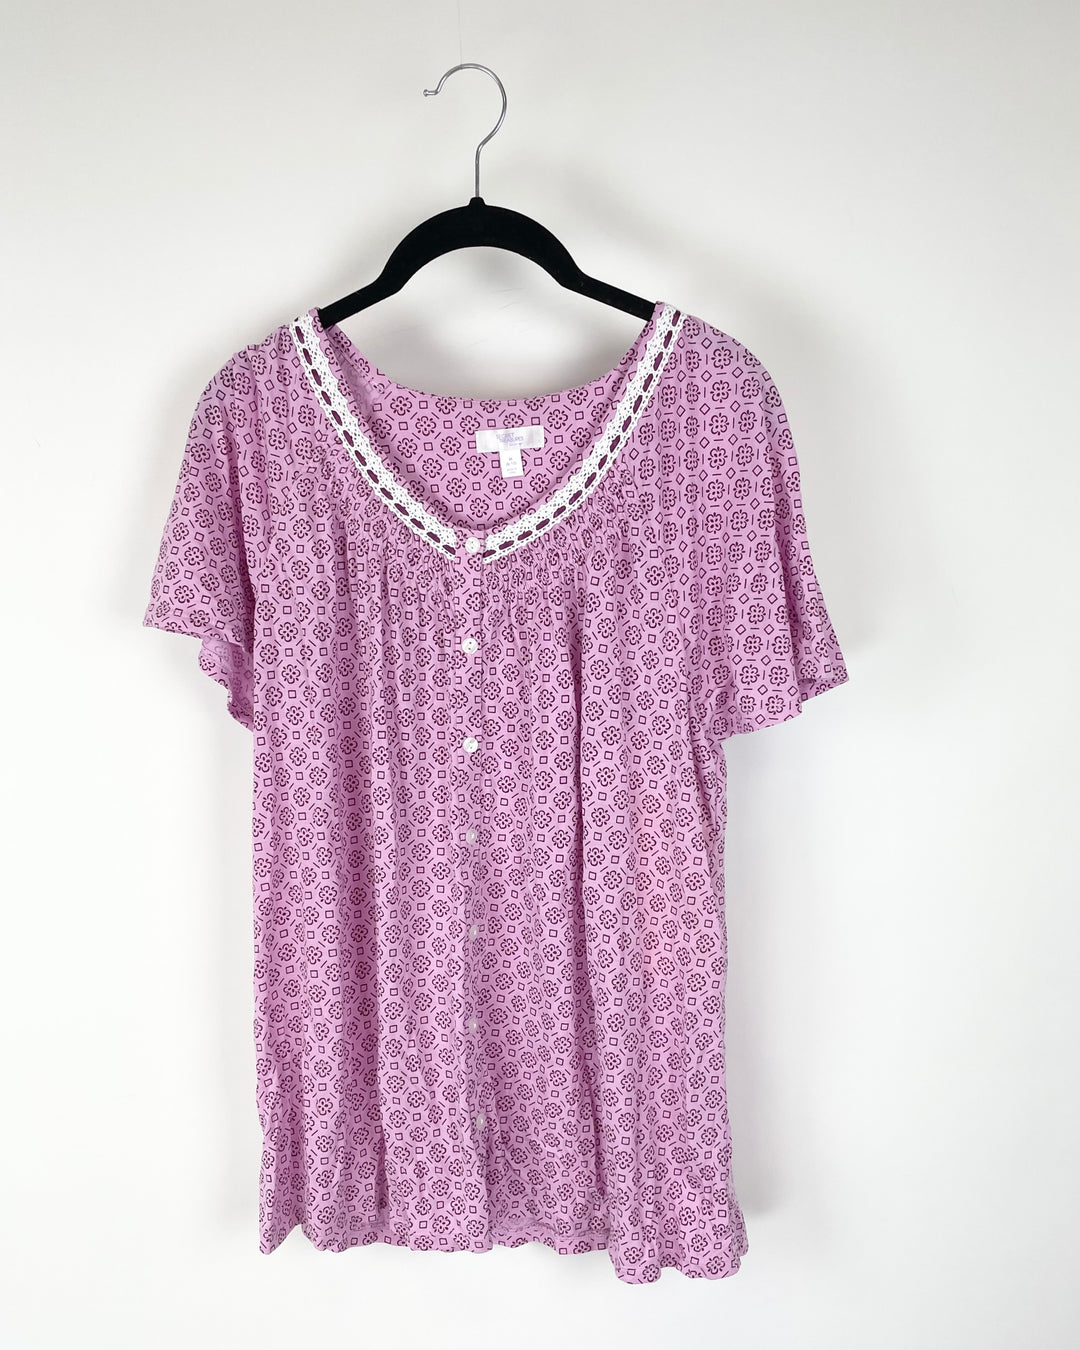 Pink Abstract Print Button Up T-Shirt - Medium